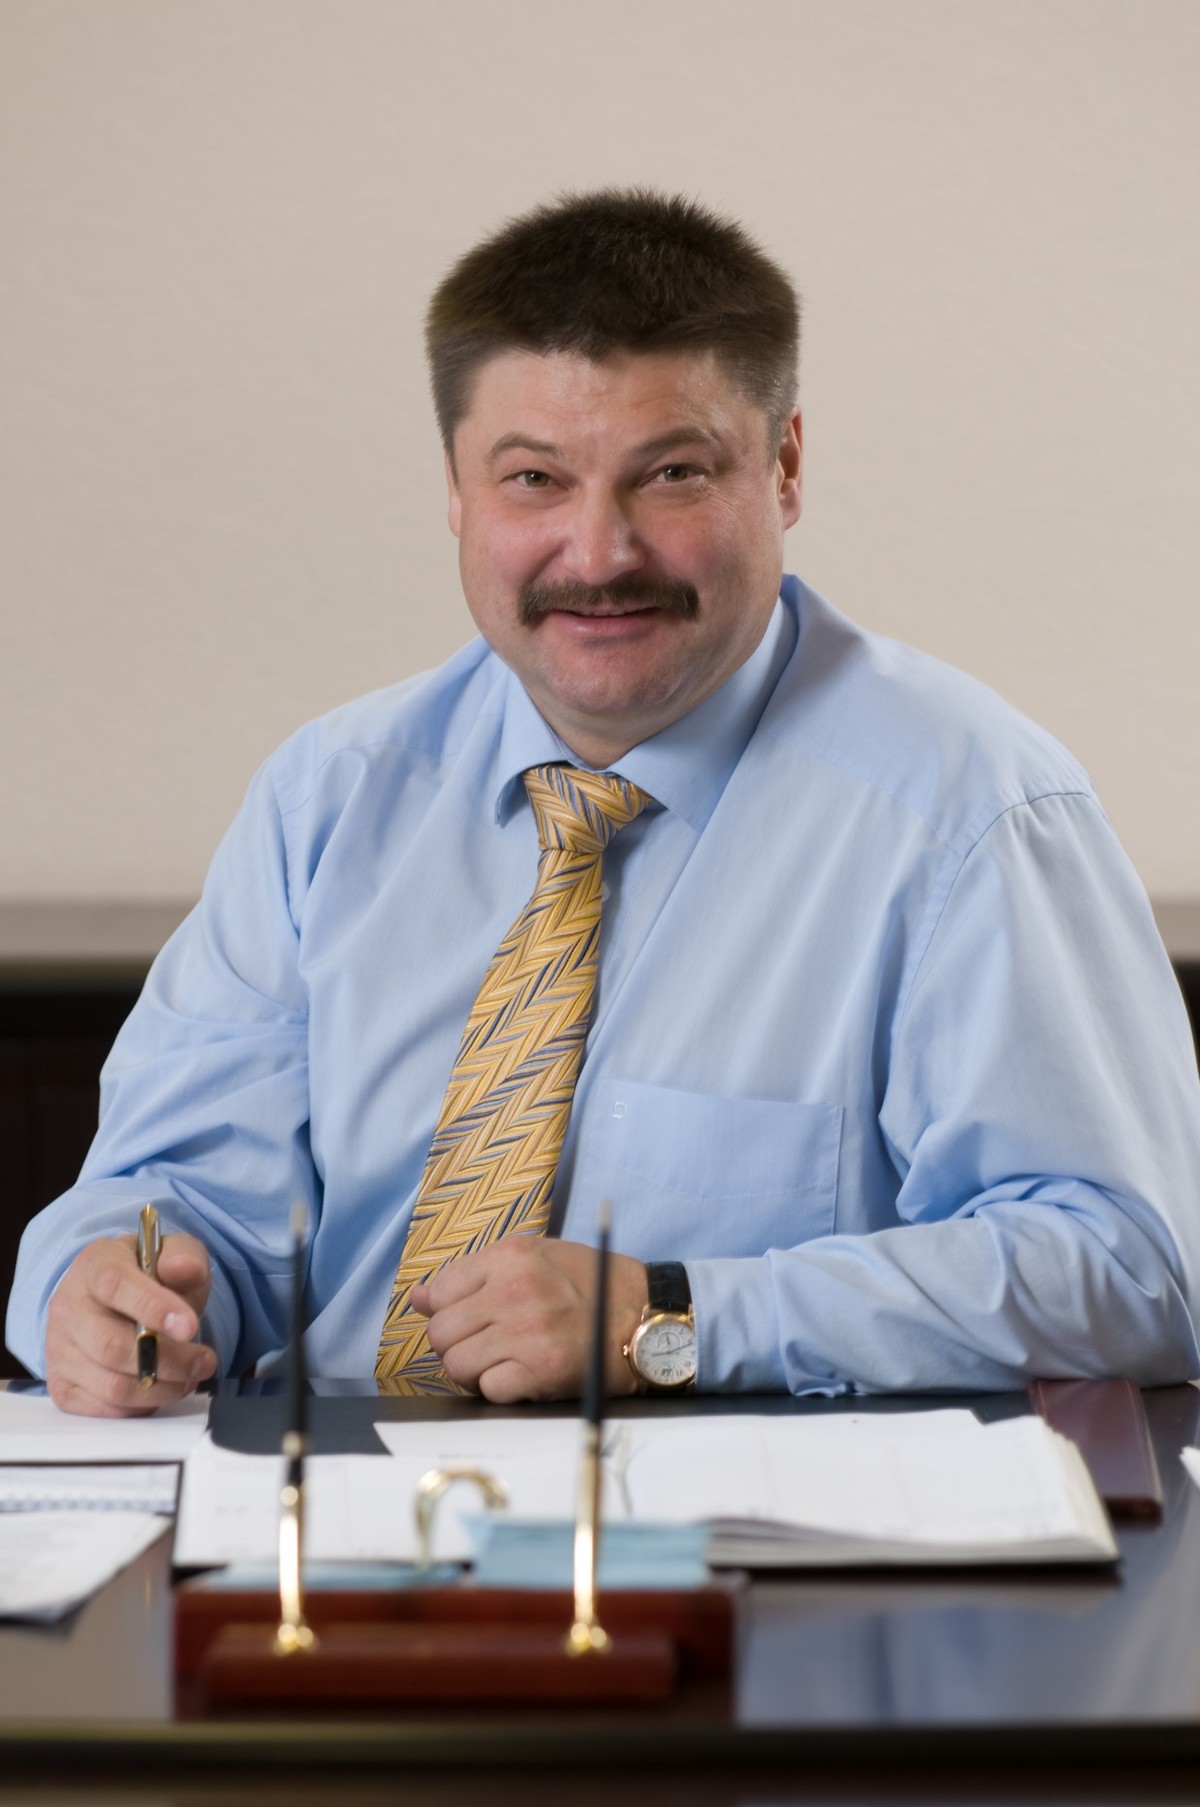 Гендиректор компании "Железные дороги Якутии" Василий Шимохин поздравляет с Днем печати